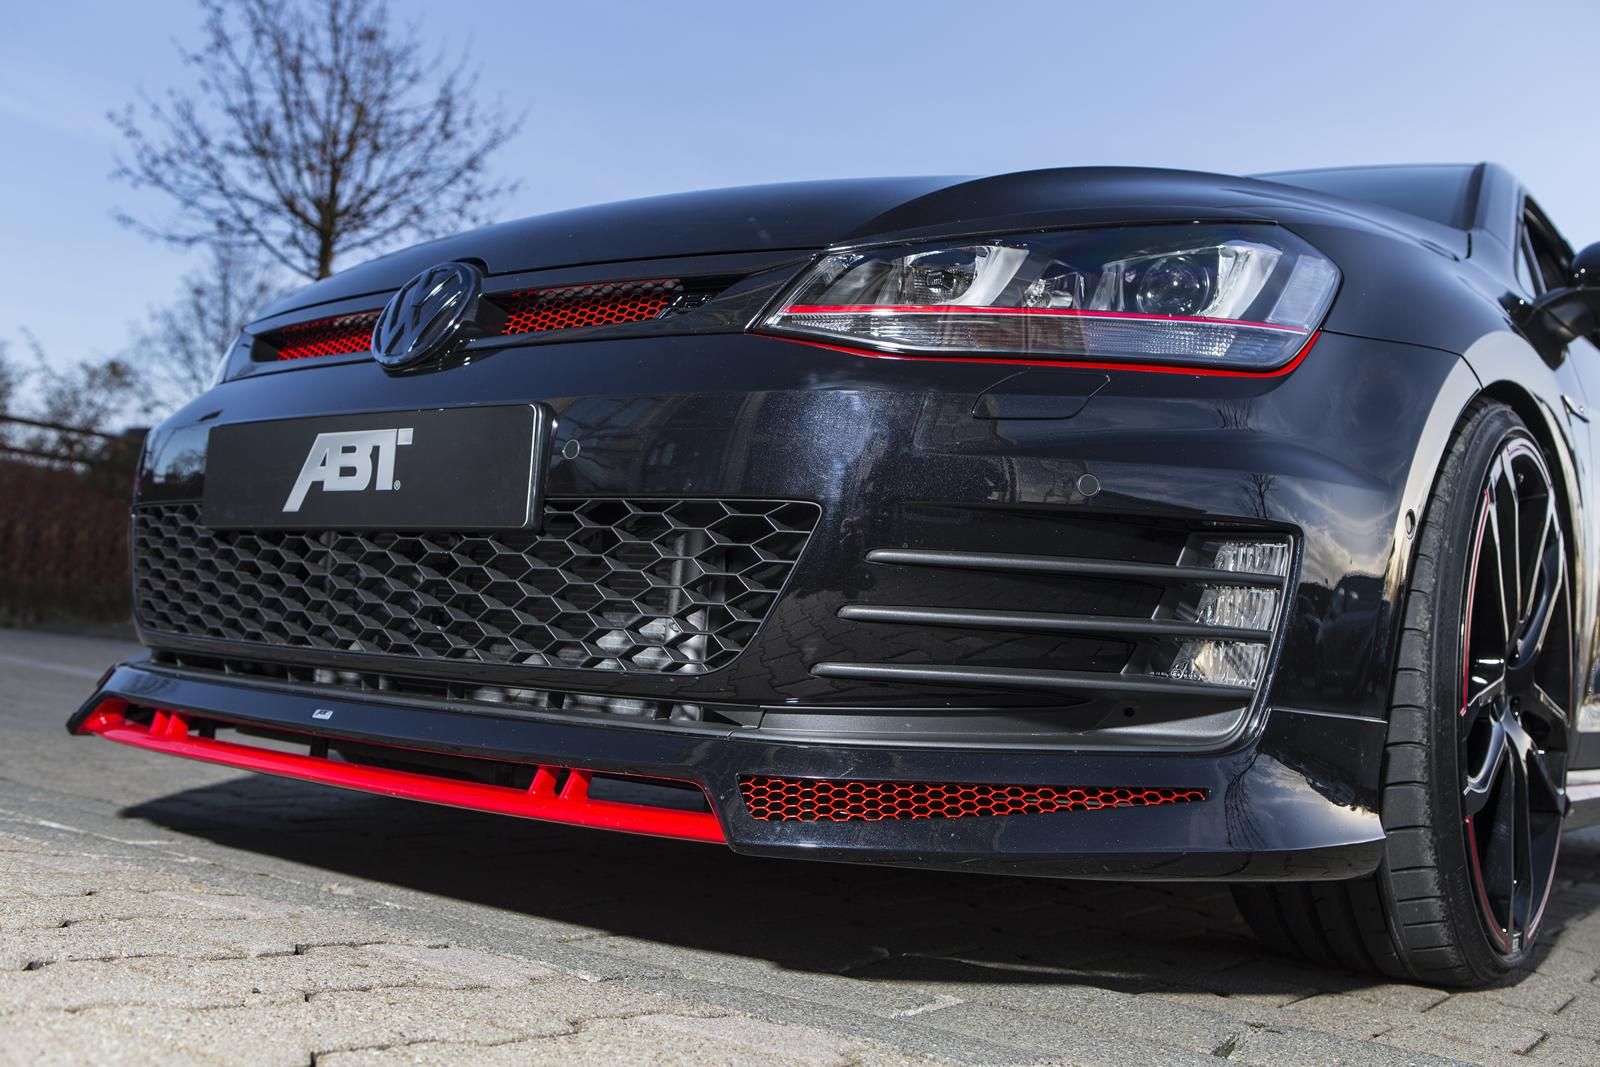 2013 Volkswagen Golf VII GTI Dark Edition by ABT Sportsline